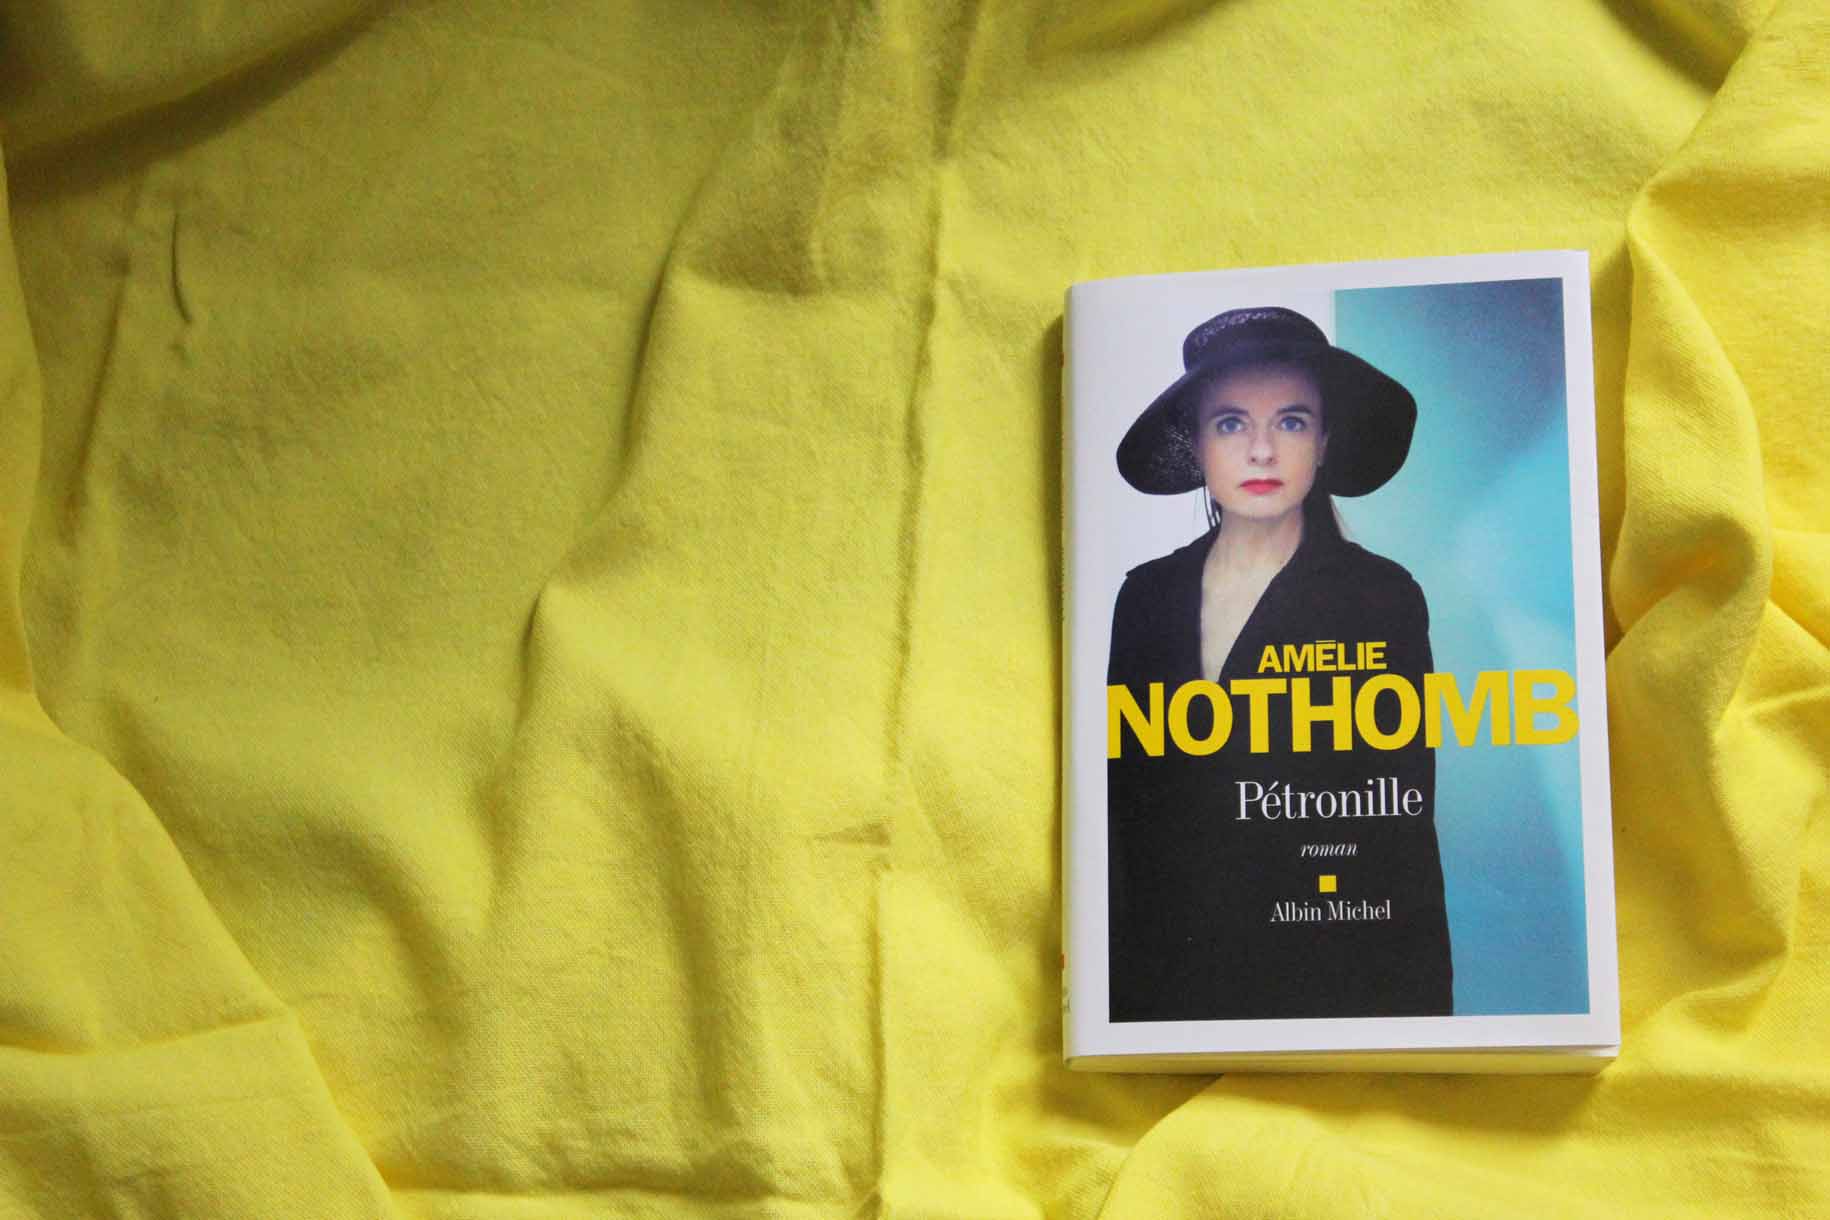 Lecture et critique du dernier livre de Amélie Nothomb, Pétronille, sur le blog culture esperluette. Rentrée littéraire 2014